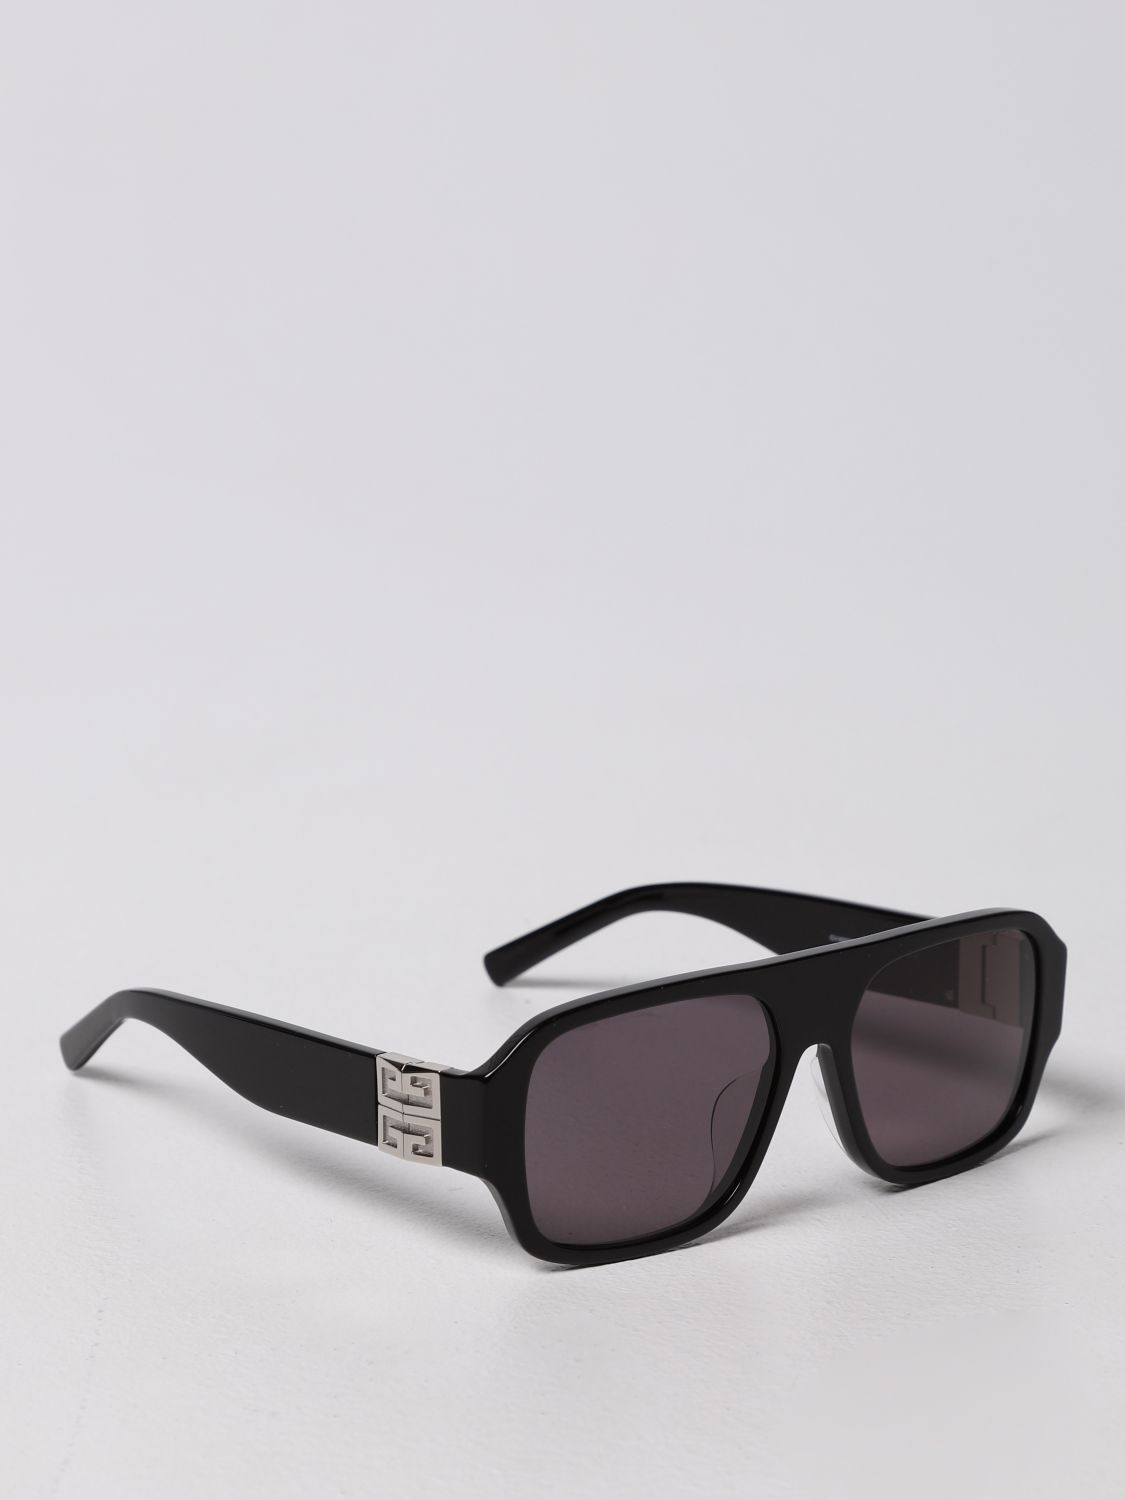 GIVENCHY: Gafas de sol acetato carey, Negro | Gafas GV40007U en línea GIGLIO.COM